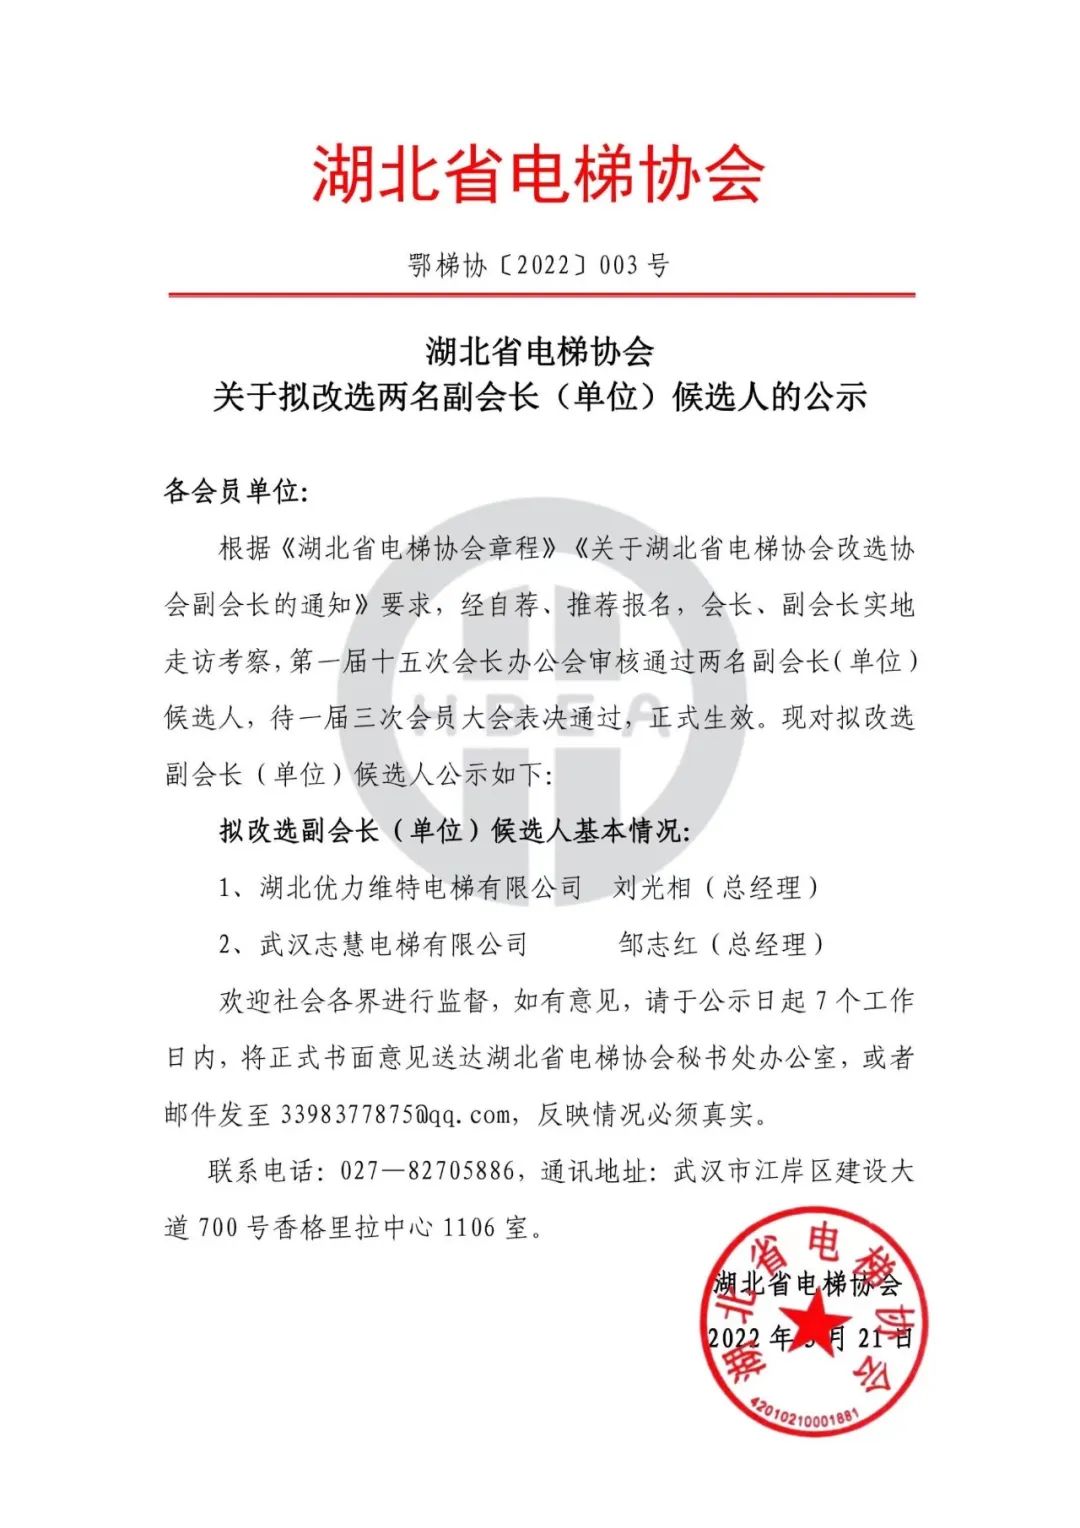 鄂梯协【2022】003号 湖北省电梯协会关于改选2名副会长候选人公示